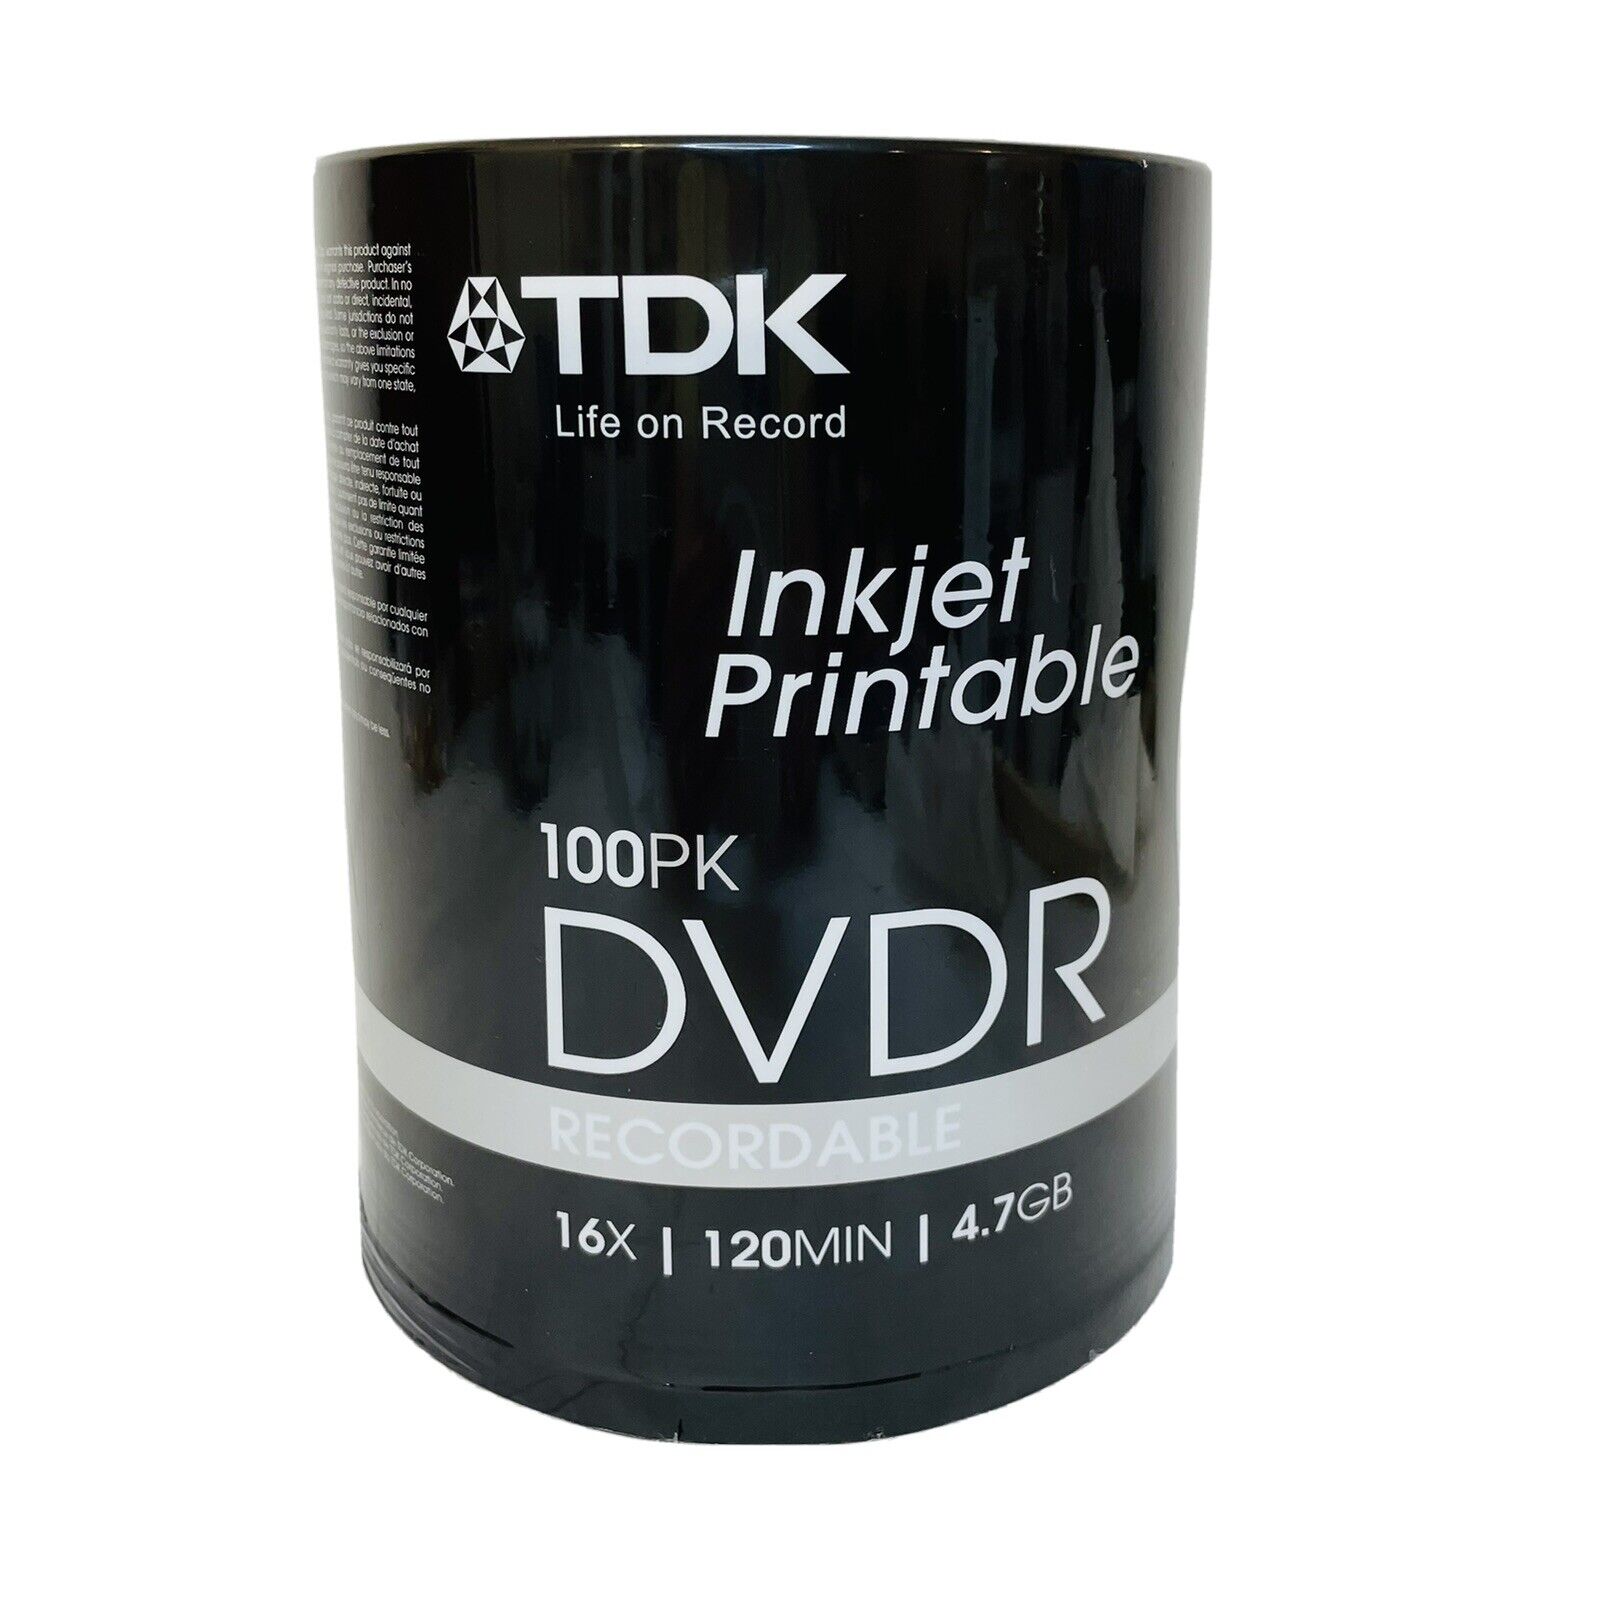 TDK Inkjet Printable DVDR 100 Pack 120 min 4.7G NEW Factory Sealed